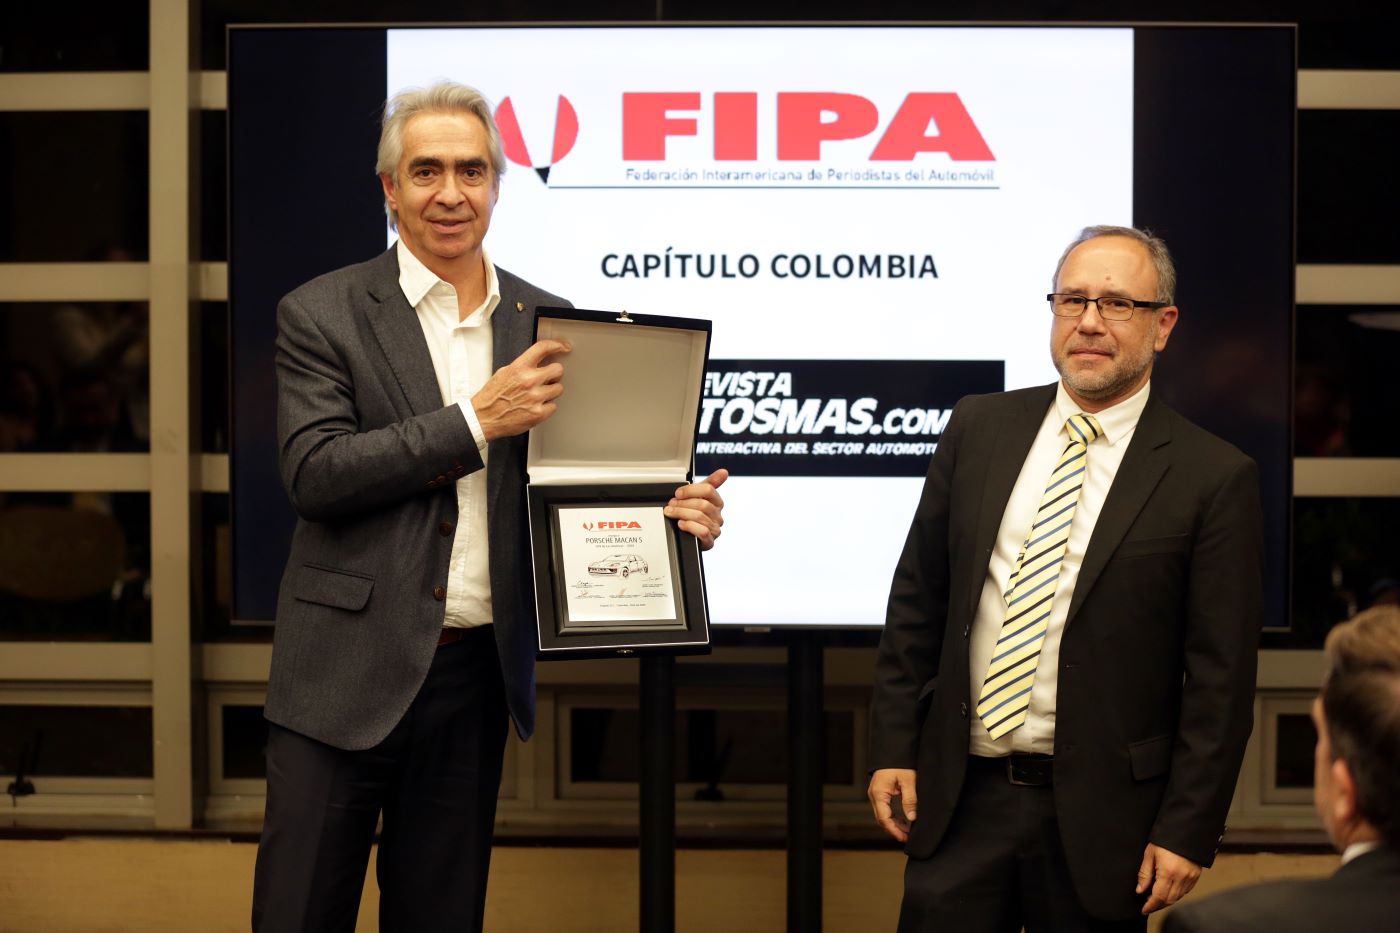 En el reconocido EK Hotel Bogotá se entregaron las placas réplicas de los Premios FIPA 2024 capítulo Colombia y se exaltó la carrera periodística de José Clopatosfky Londoño. V12MAGAZINE